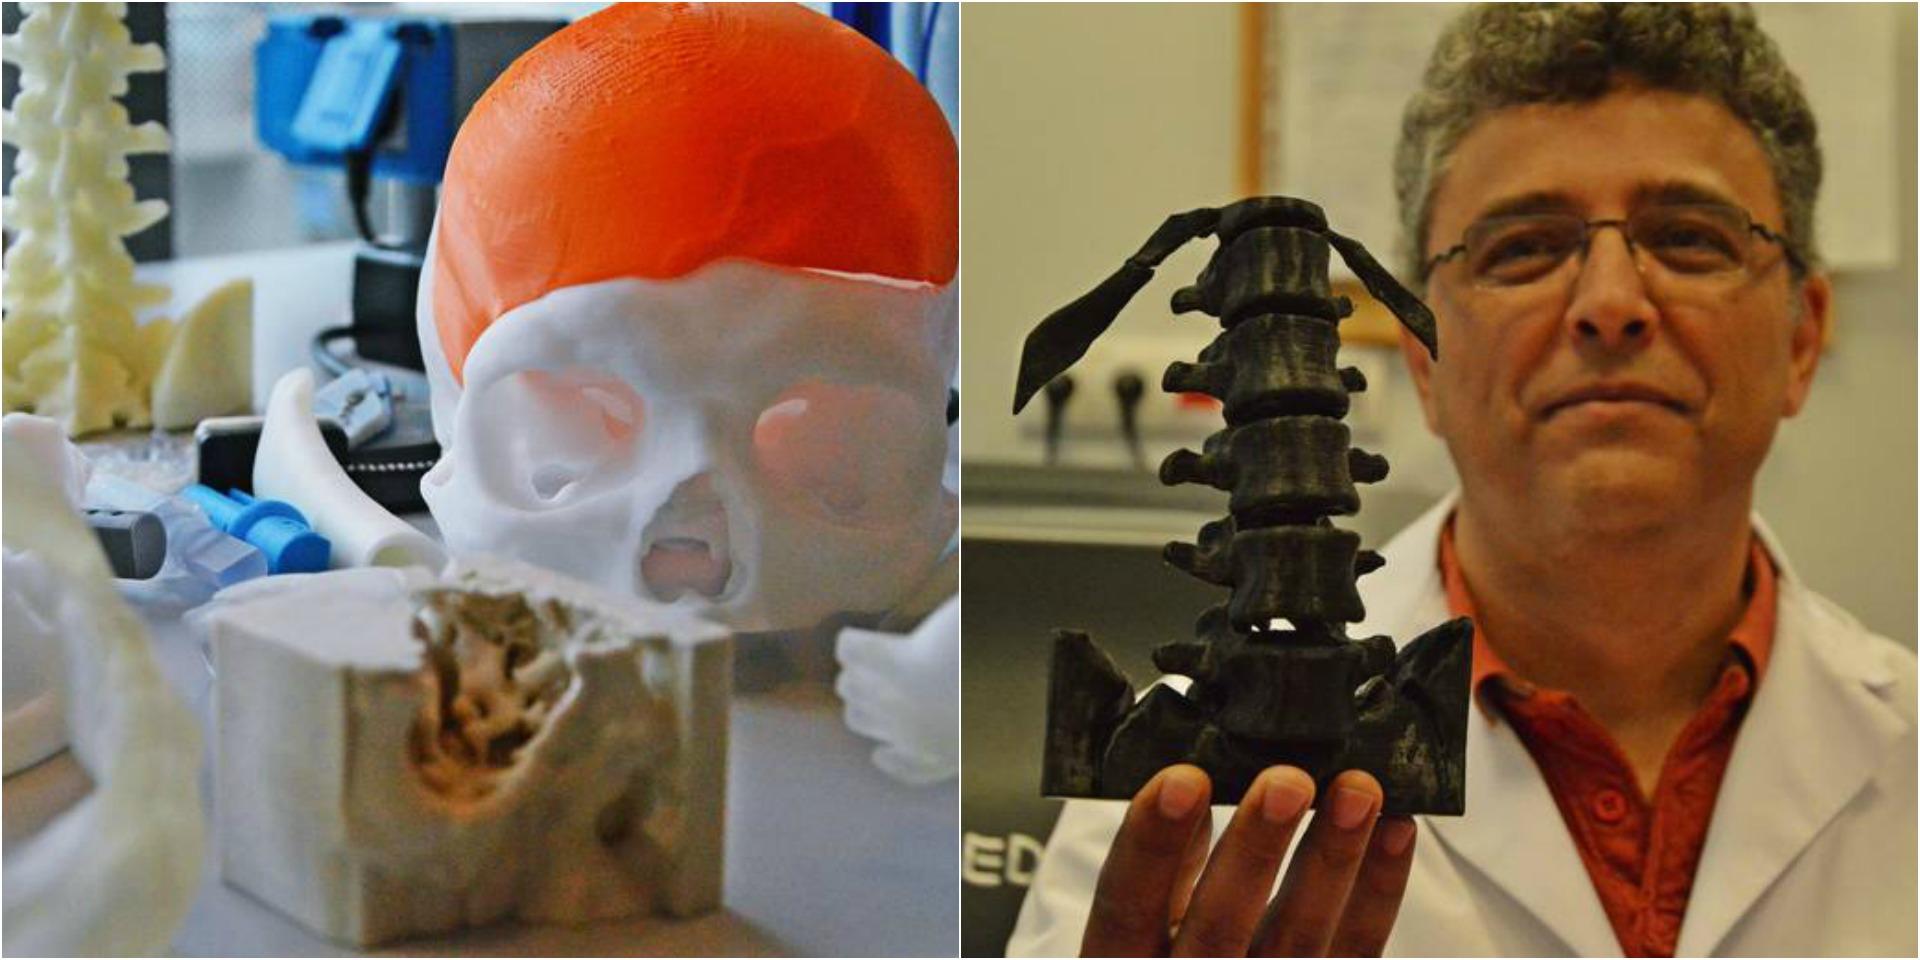 Pracownia Indywidualnych Implantów Medycznych testuje nową drukarkę 3D 